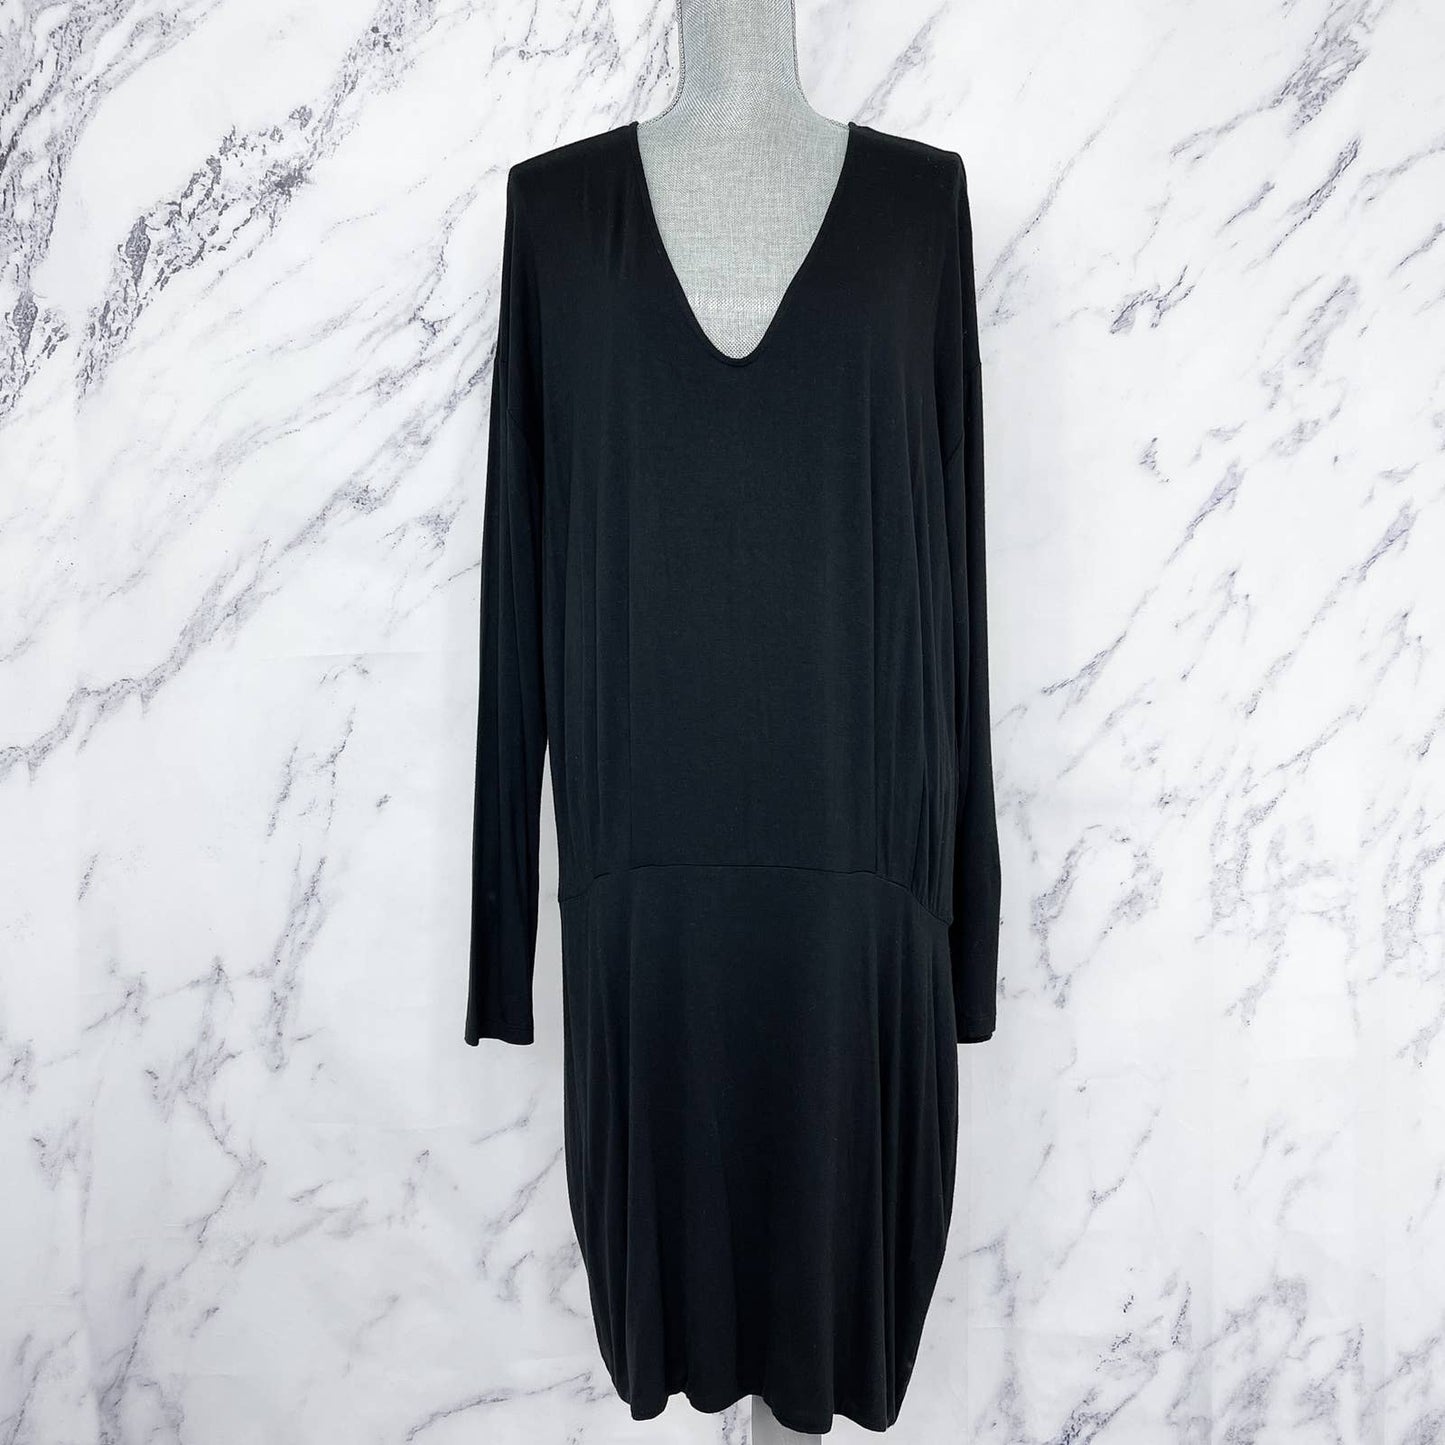 Banana Republic | Black Knit Long Sleeve Dress | Sz XL